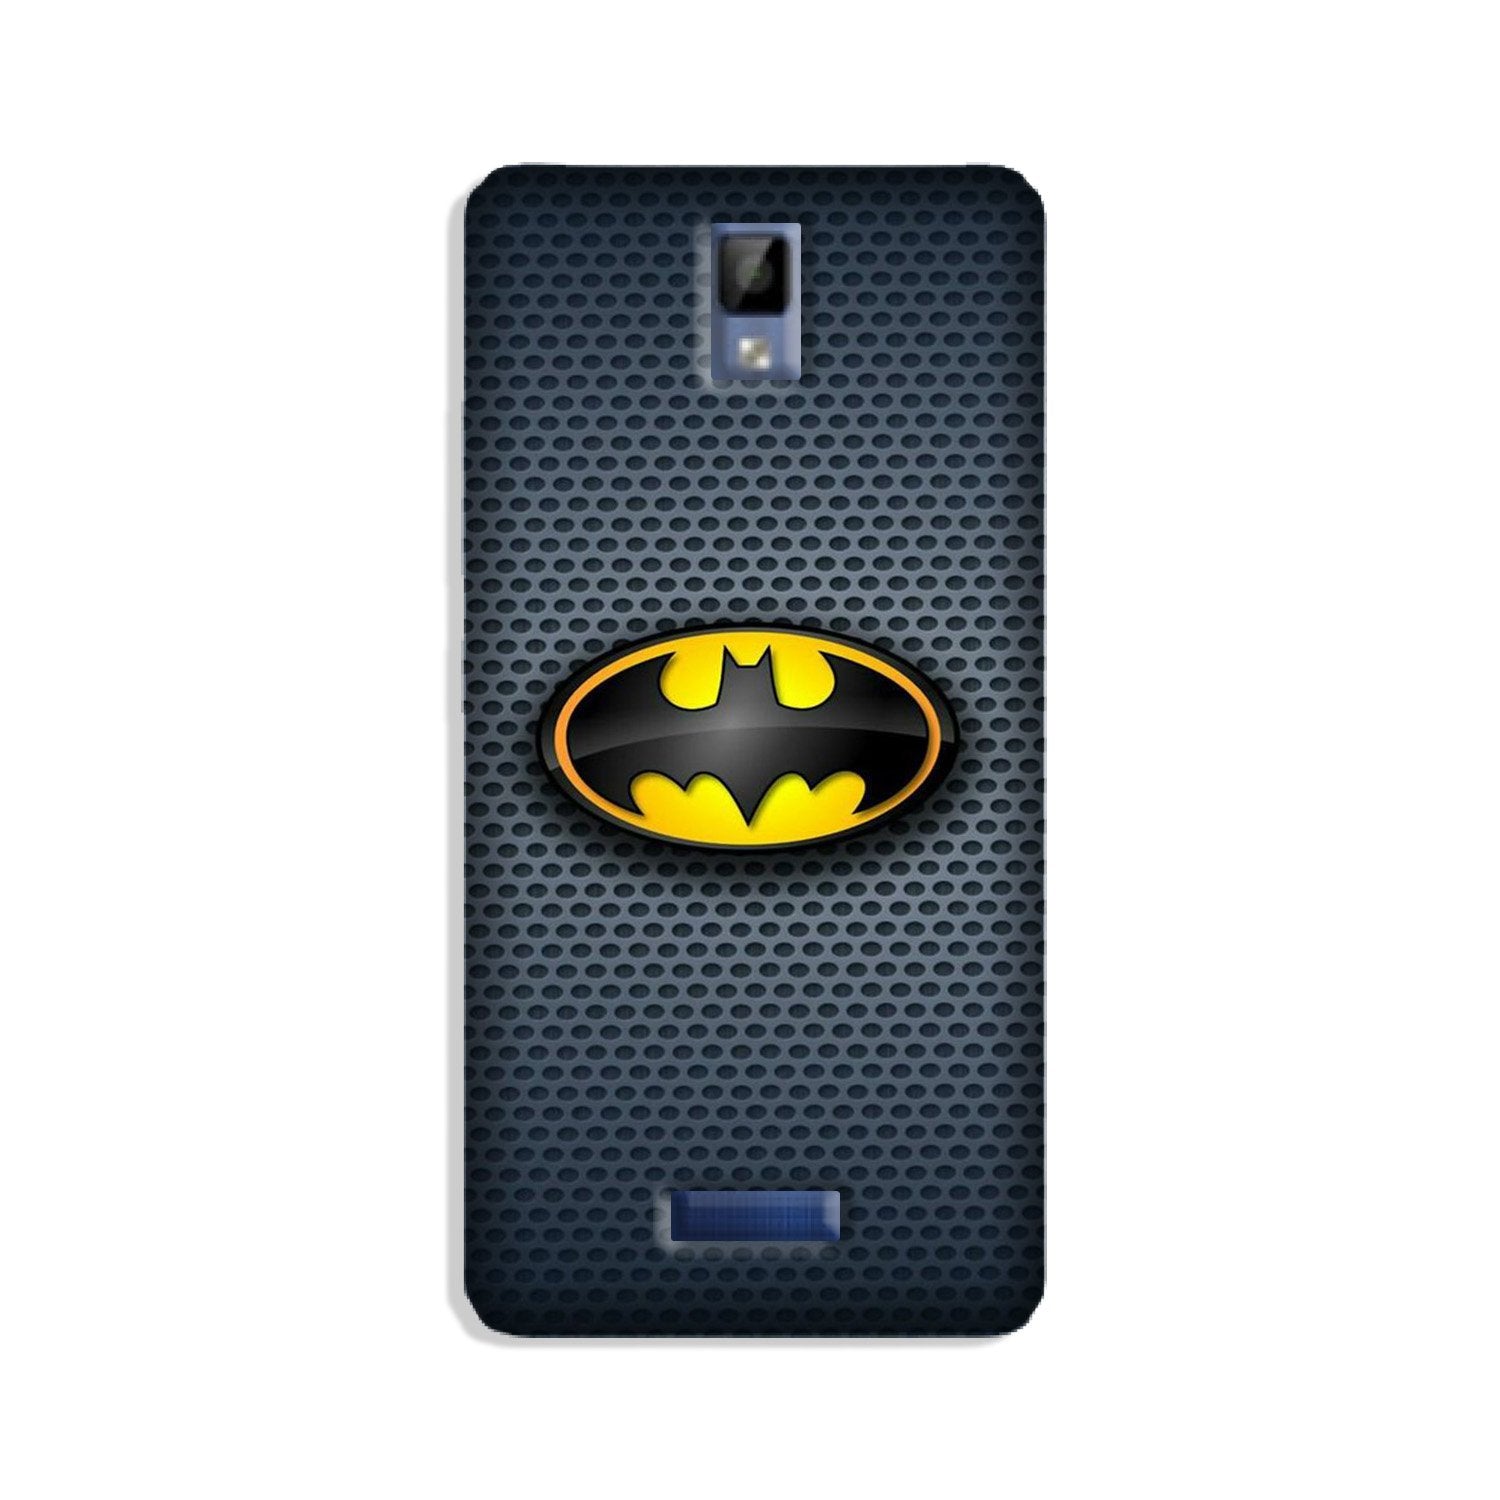 Batman Case for Gionee P7 (Design No. 244)